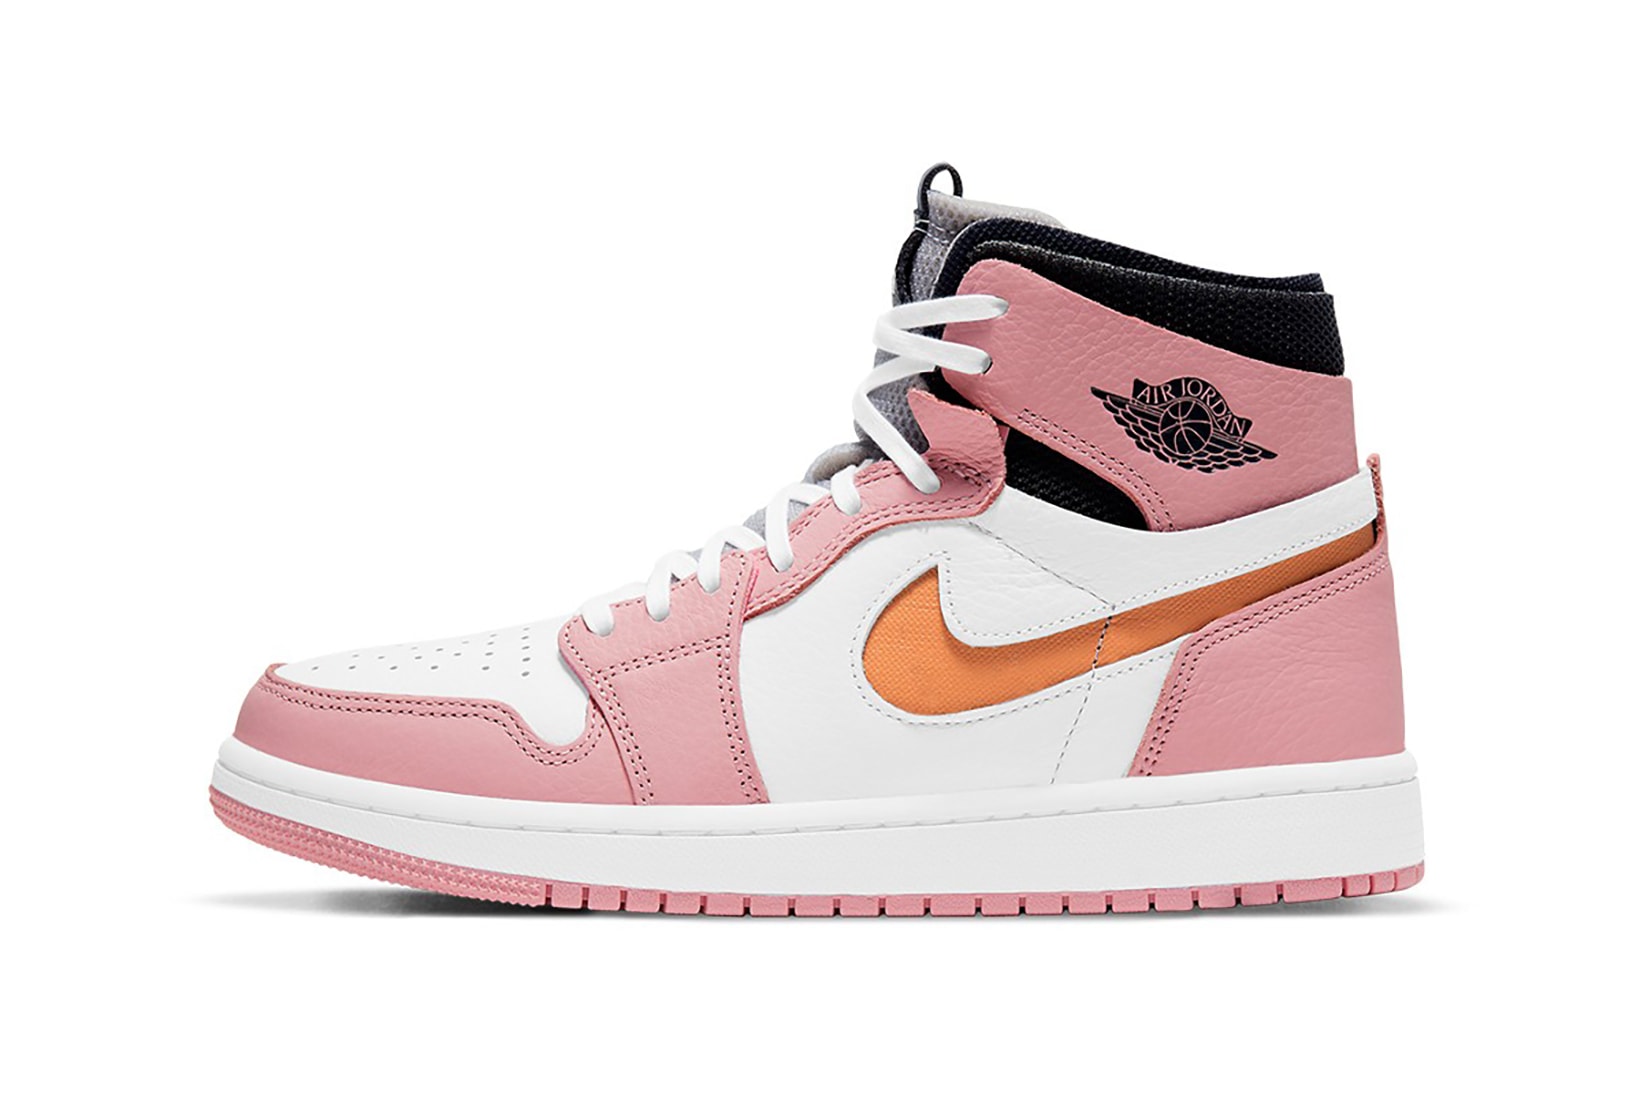 nike air jordan 1 high zoom cmft sneakers pink glaze black orange white colorway shoes footwear sneakerhead lateral laces